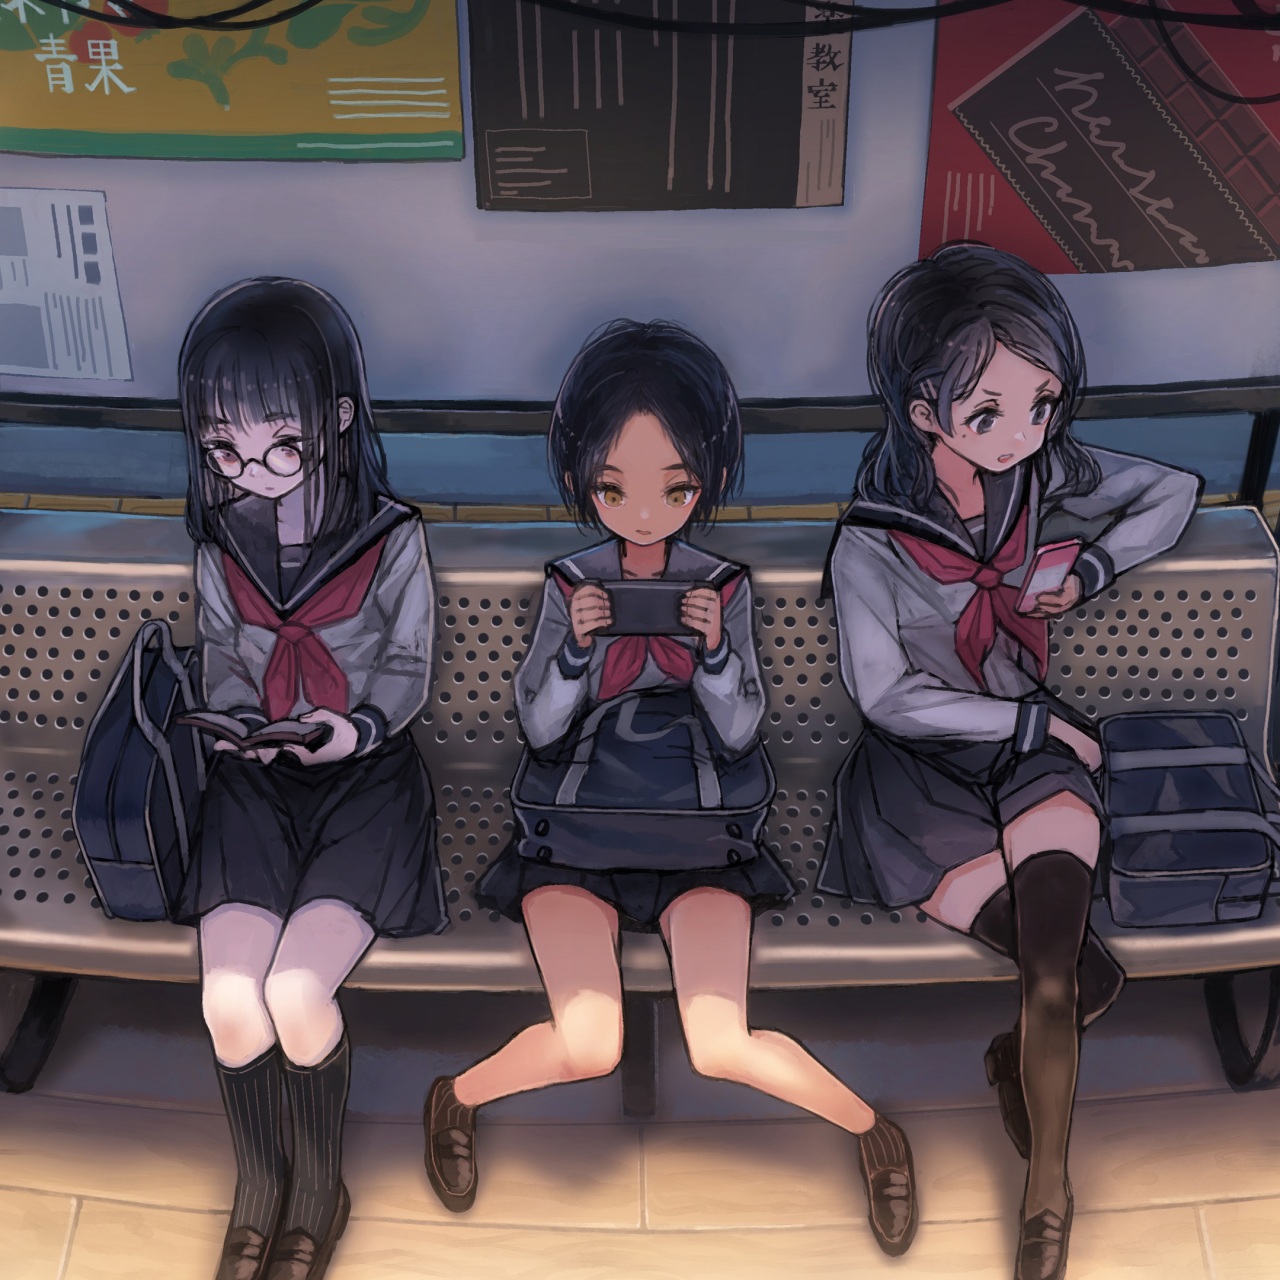 Wallpaper 4k Anime Schoool Girls On Phones Waiting For Bus 4k Wallpaper